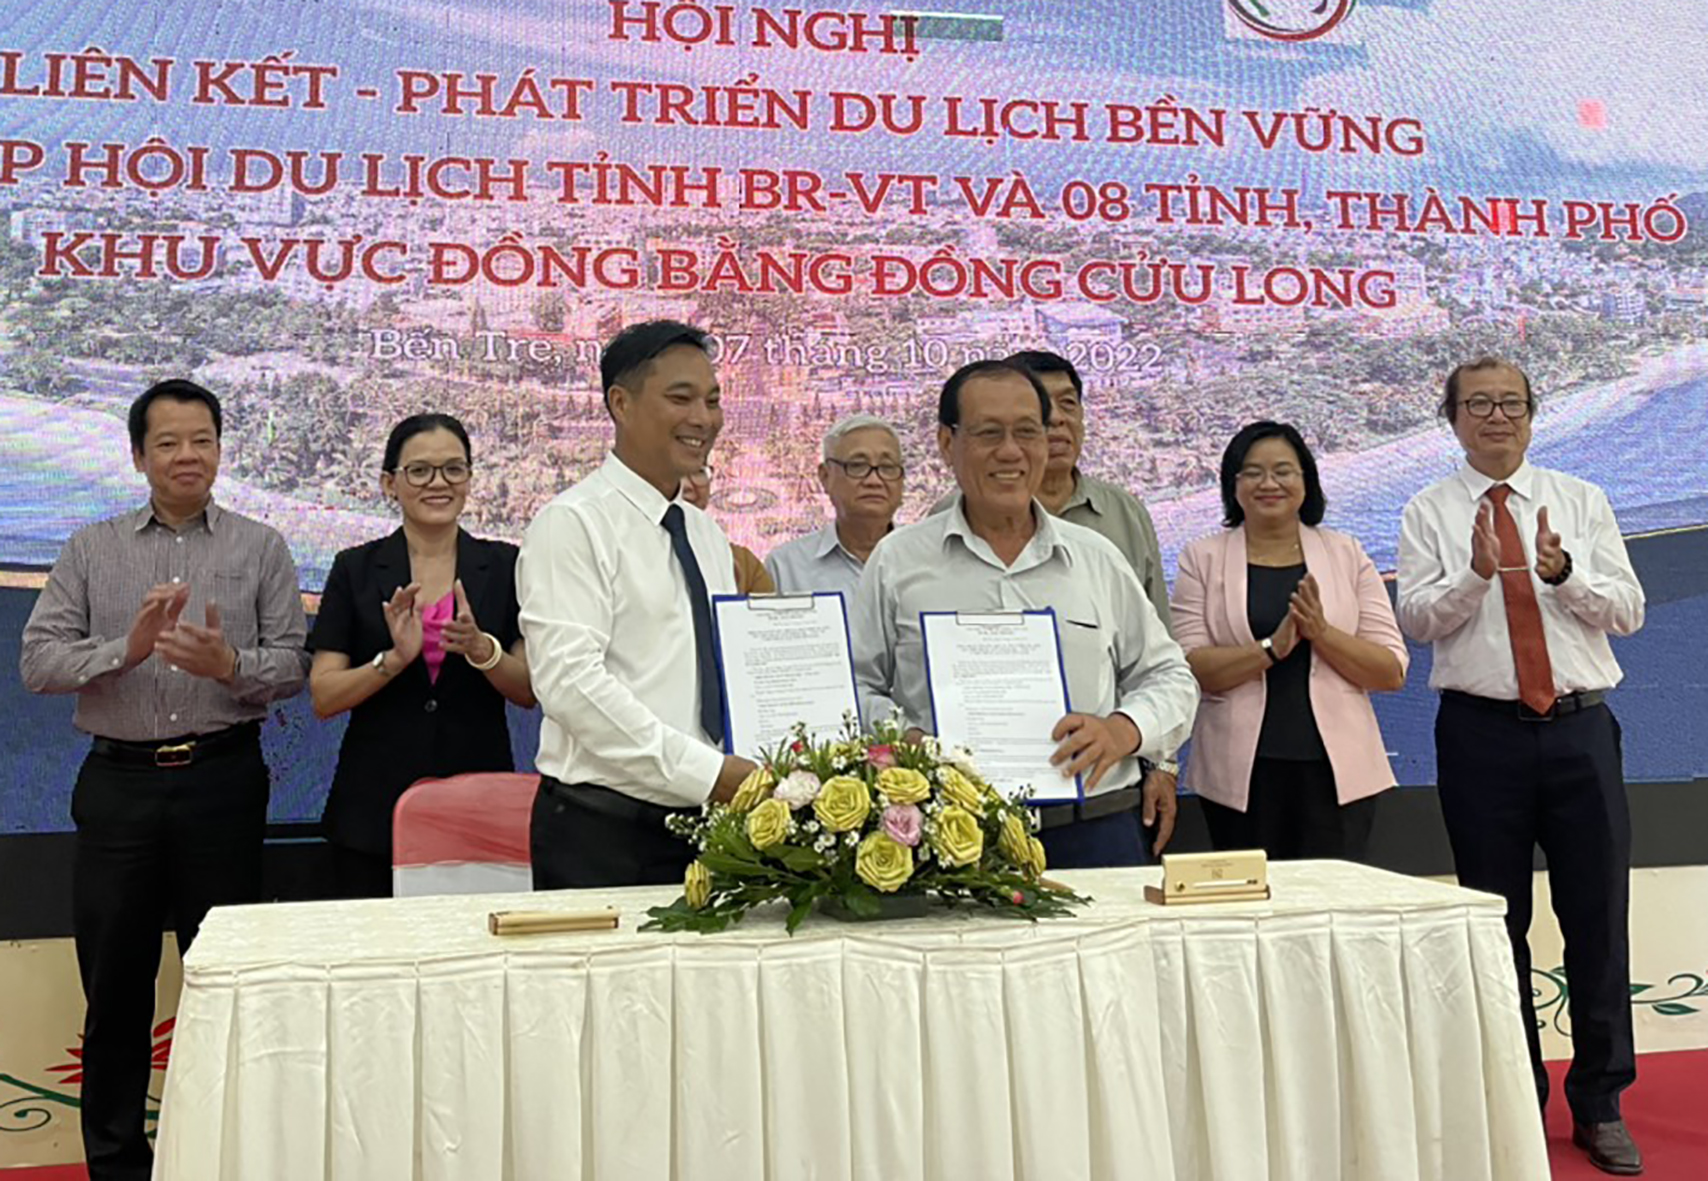 Ký kết hợp tác phát triển du lịch giữa HHDL Bà Rịa-Vũng Tàu và các tỉnh, thành Đồng bằng sông Cửu Long. 